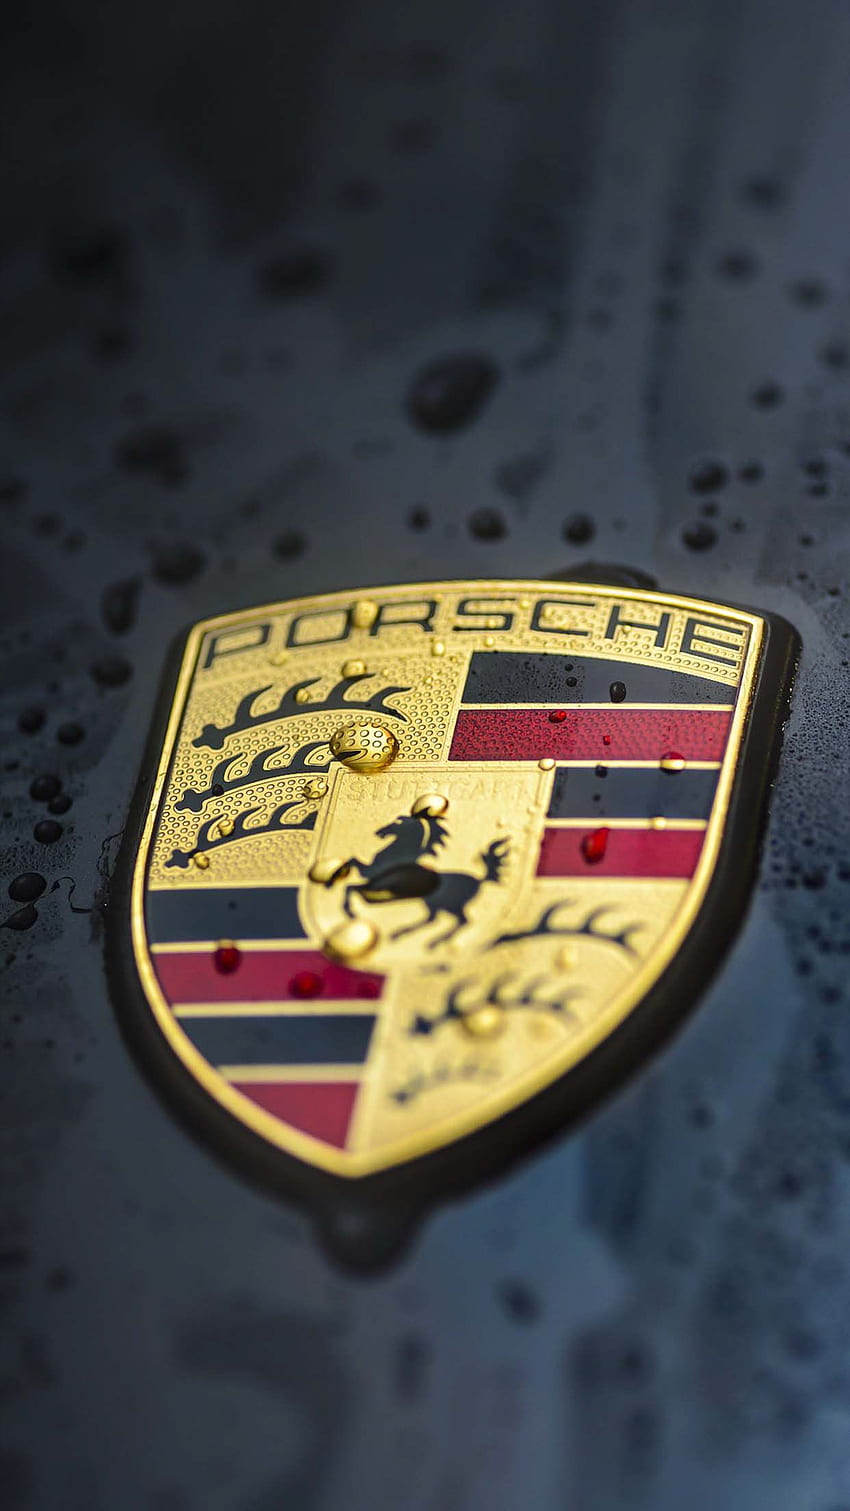 Porsche (Including iPhone Resolution), Porsche Logo HD phone wallpaper